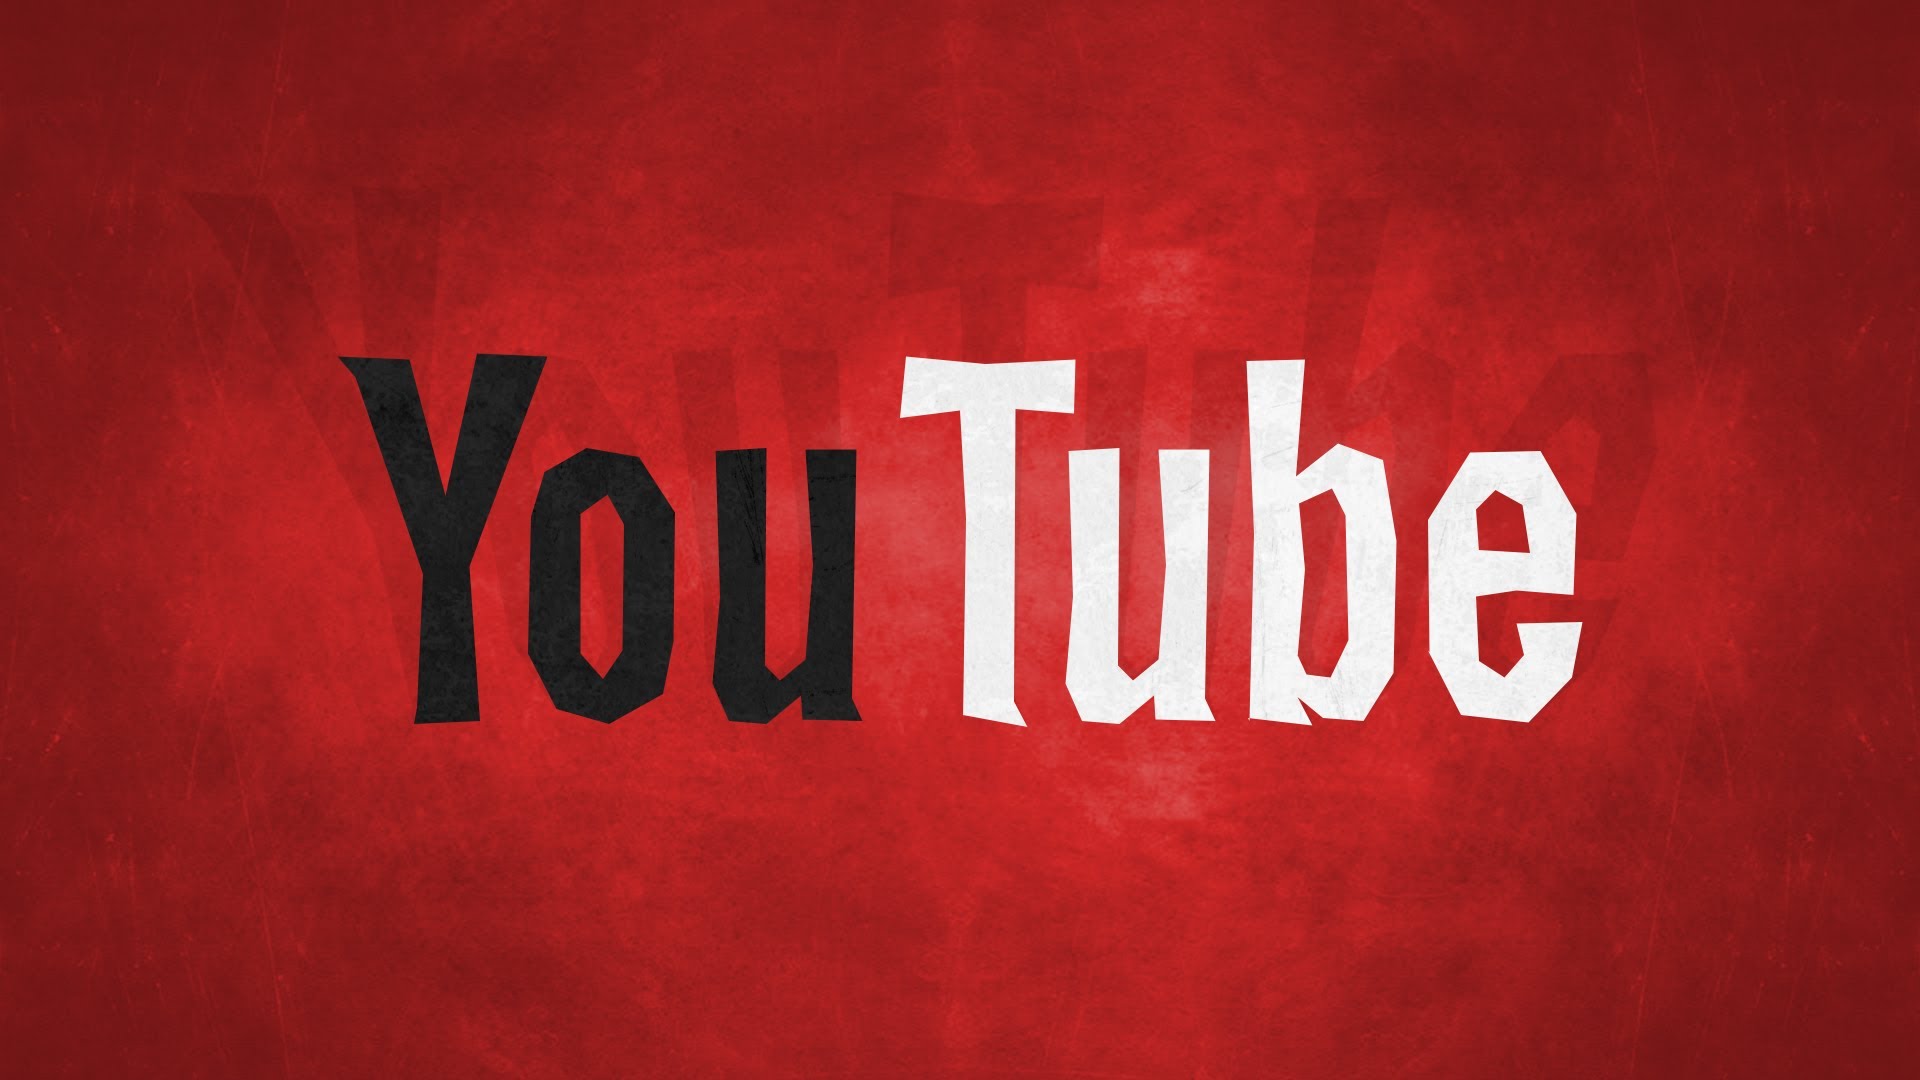 Youtube met à jour son algorithme et assure plus de contrôle sur les vidéos